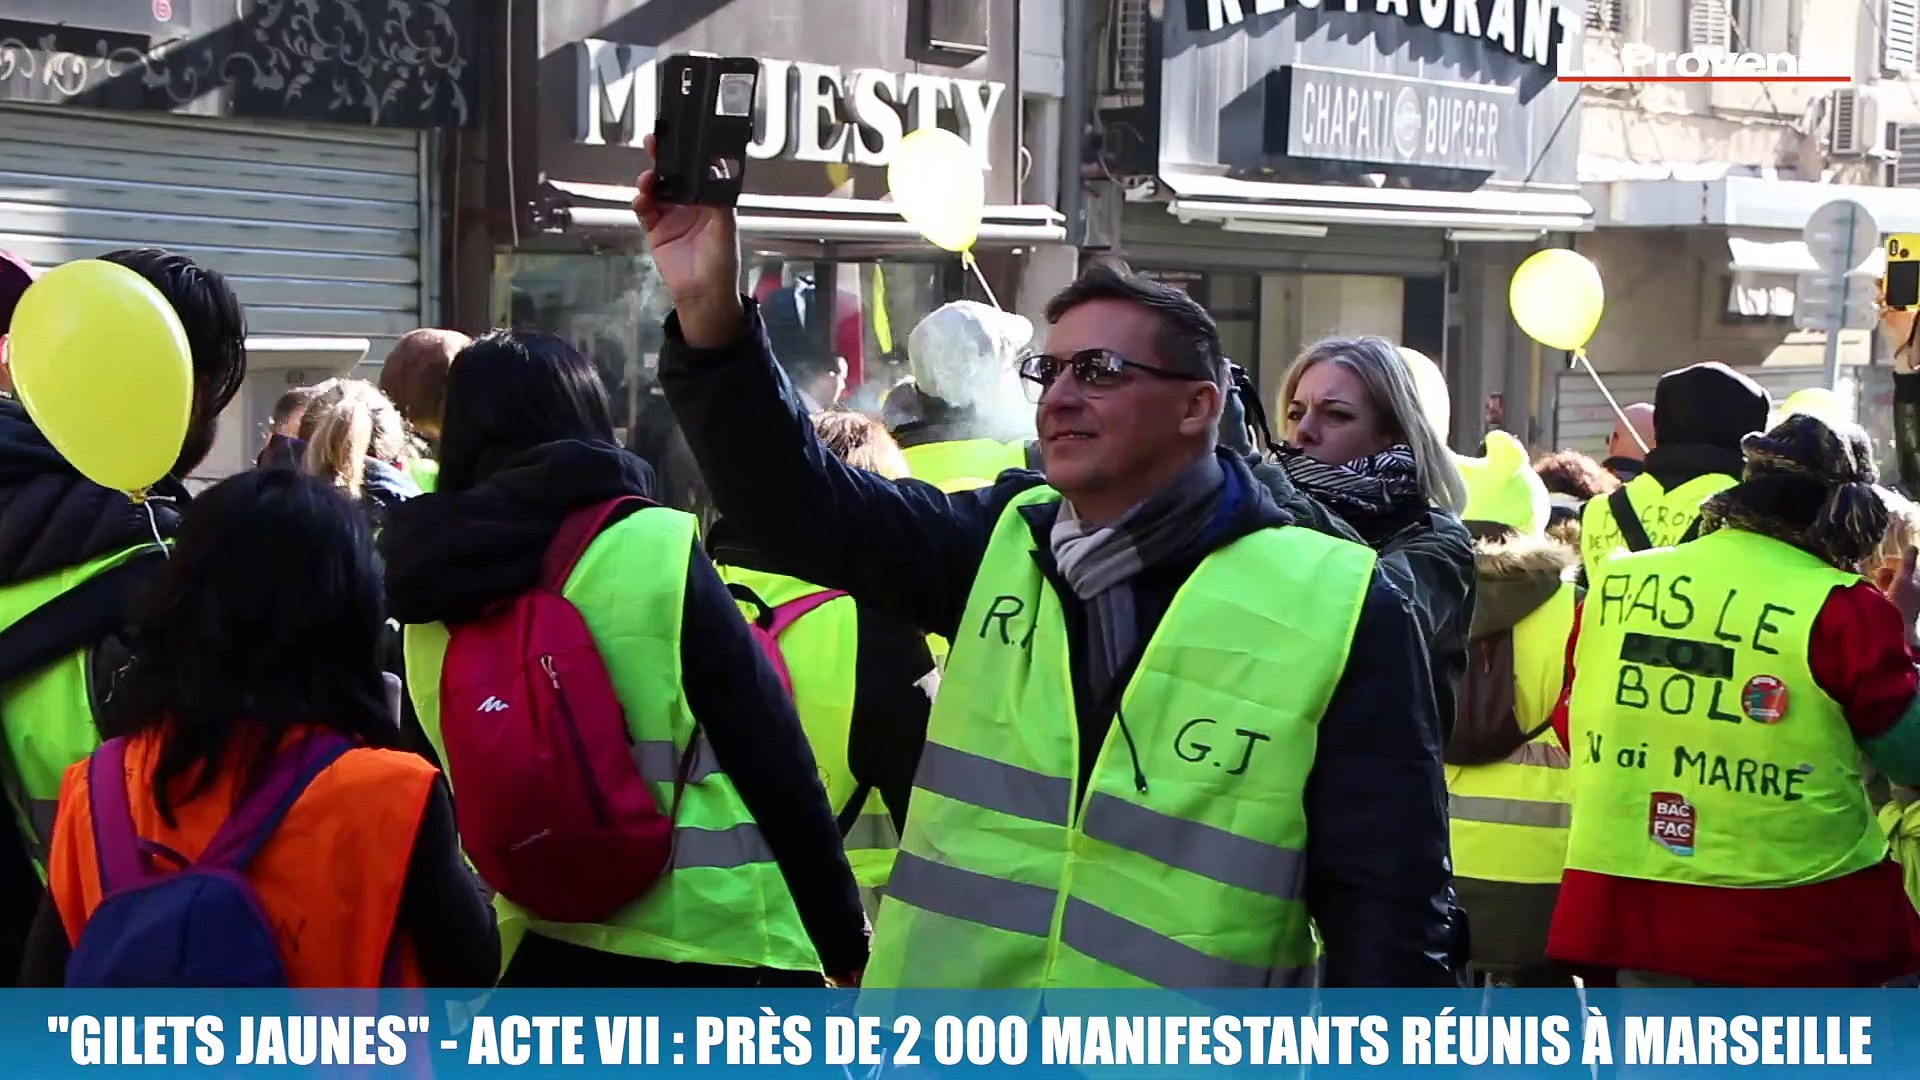 Gilets jaunes - Acte VII : près de 2 000 manifestants réunis à Marseille -  Vidéo Dailymotion